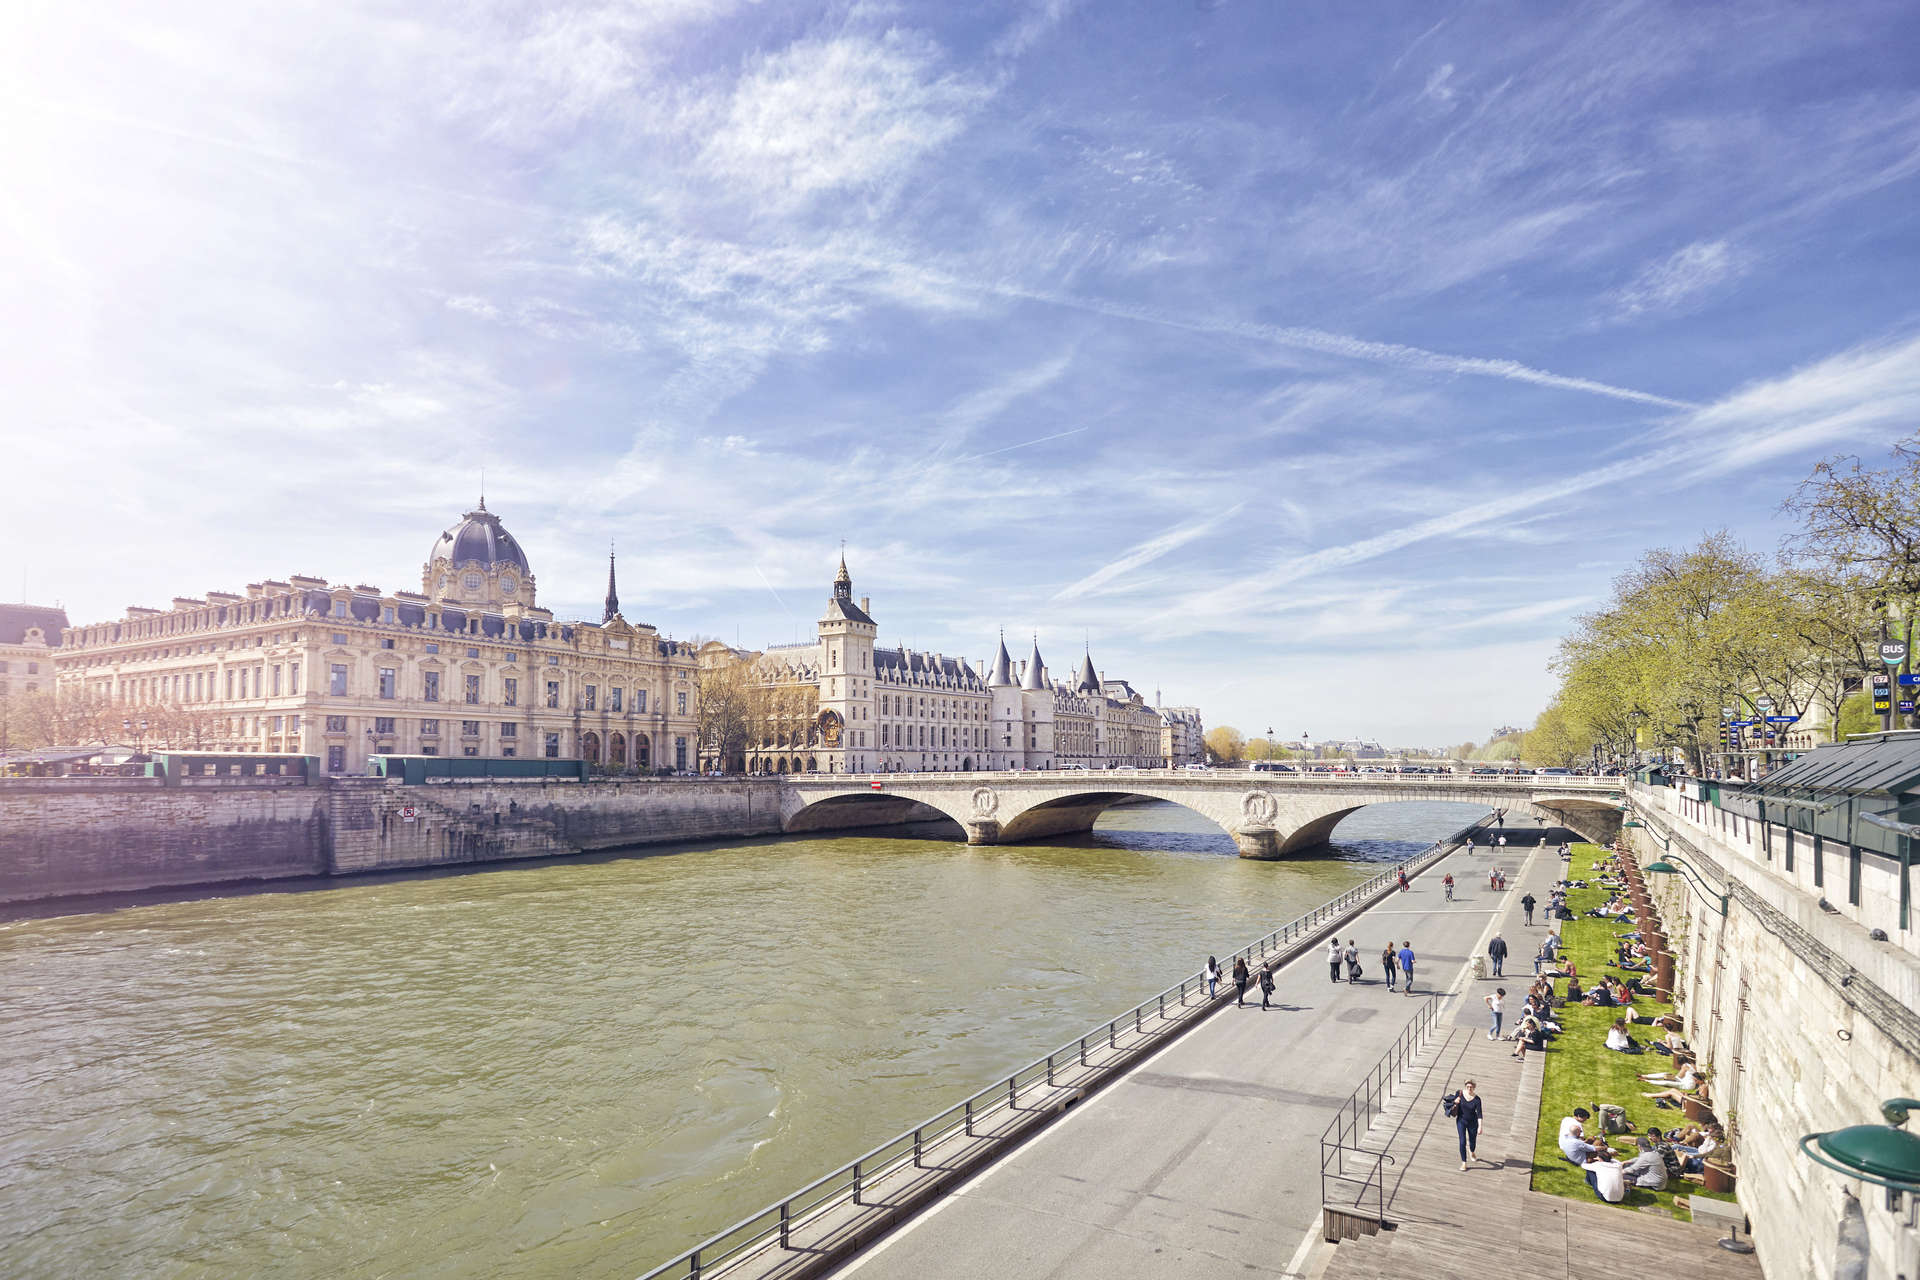 The River Seine runs through the heart of Paris